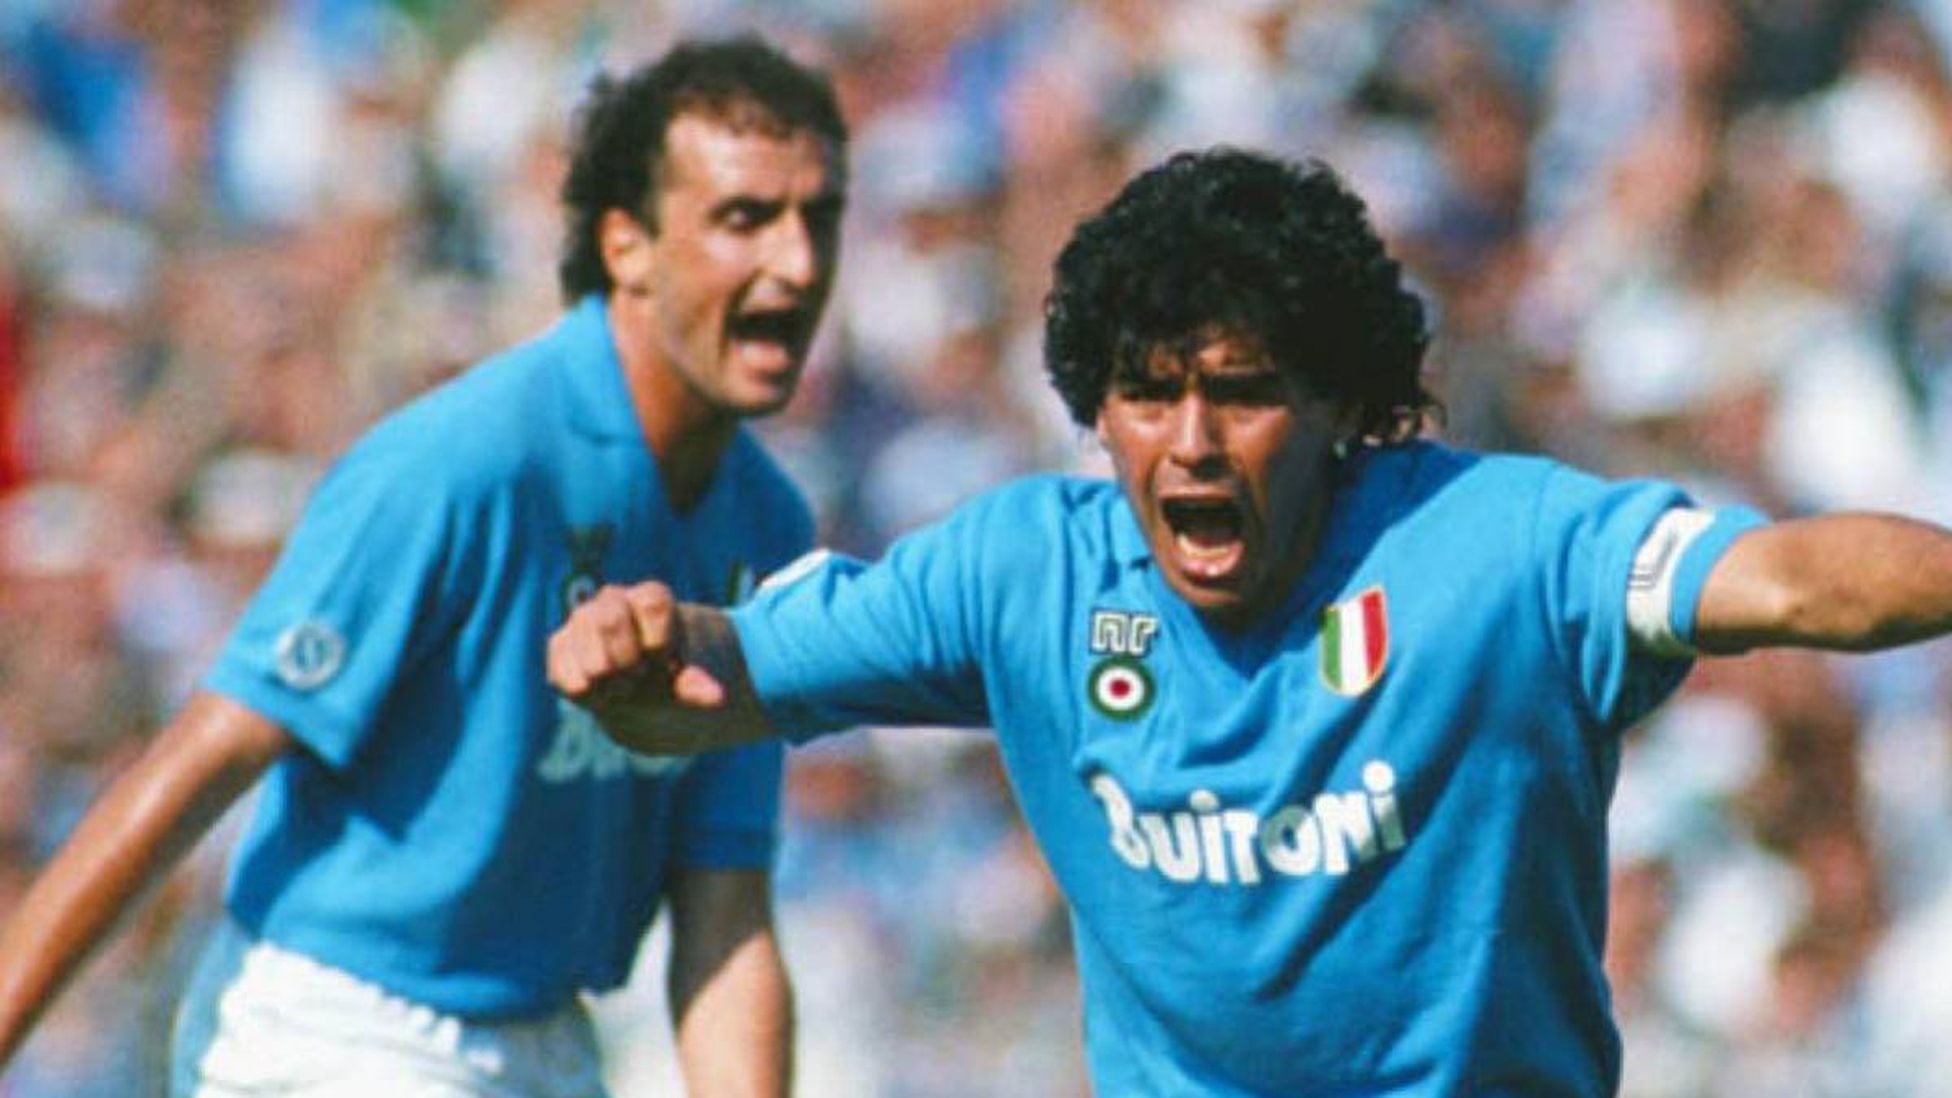 ¿Dónde jugó Maradona en Napoli